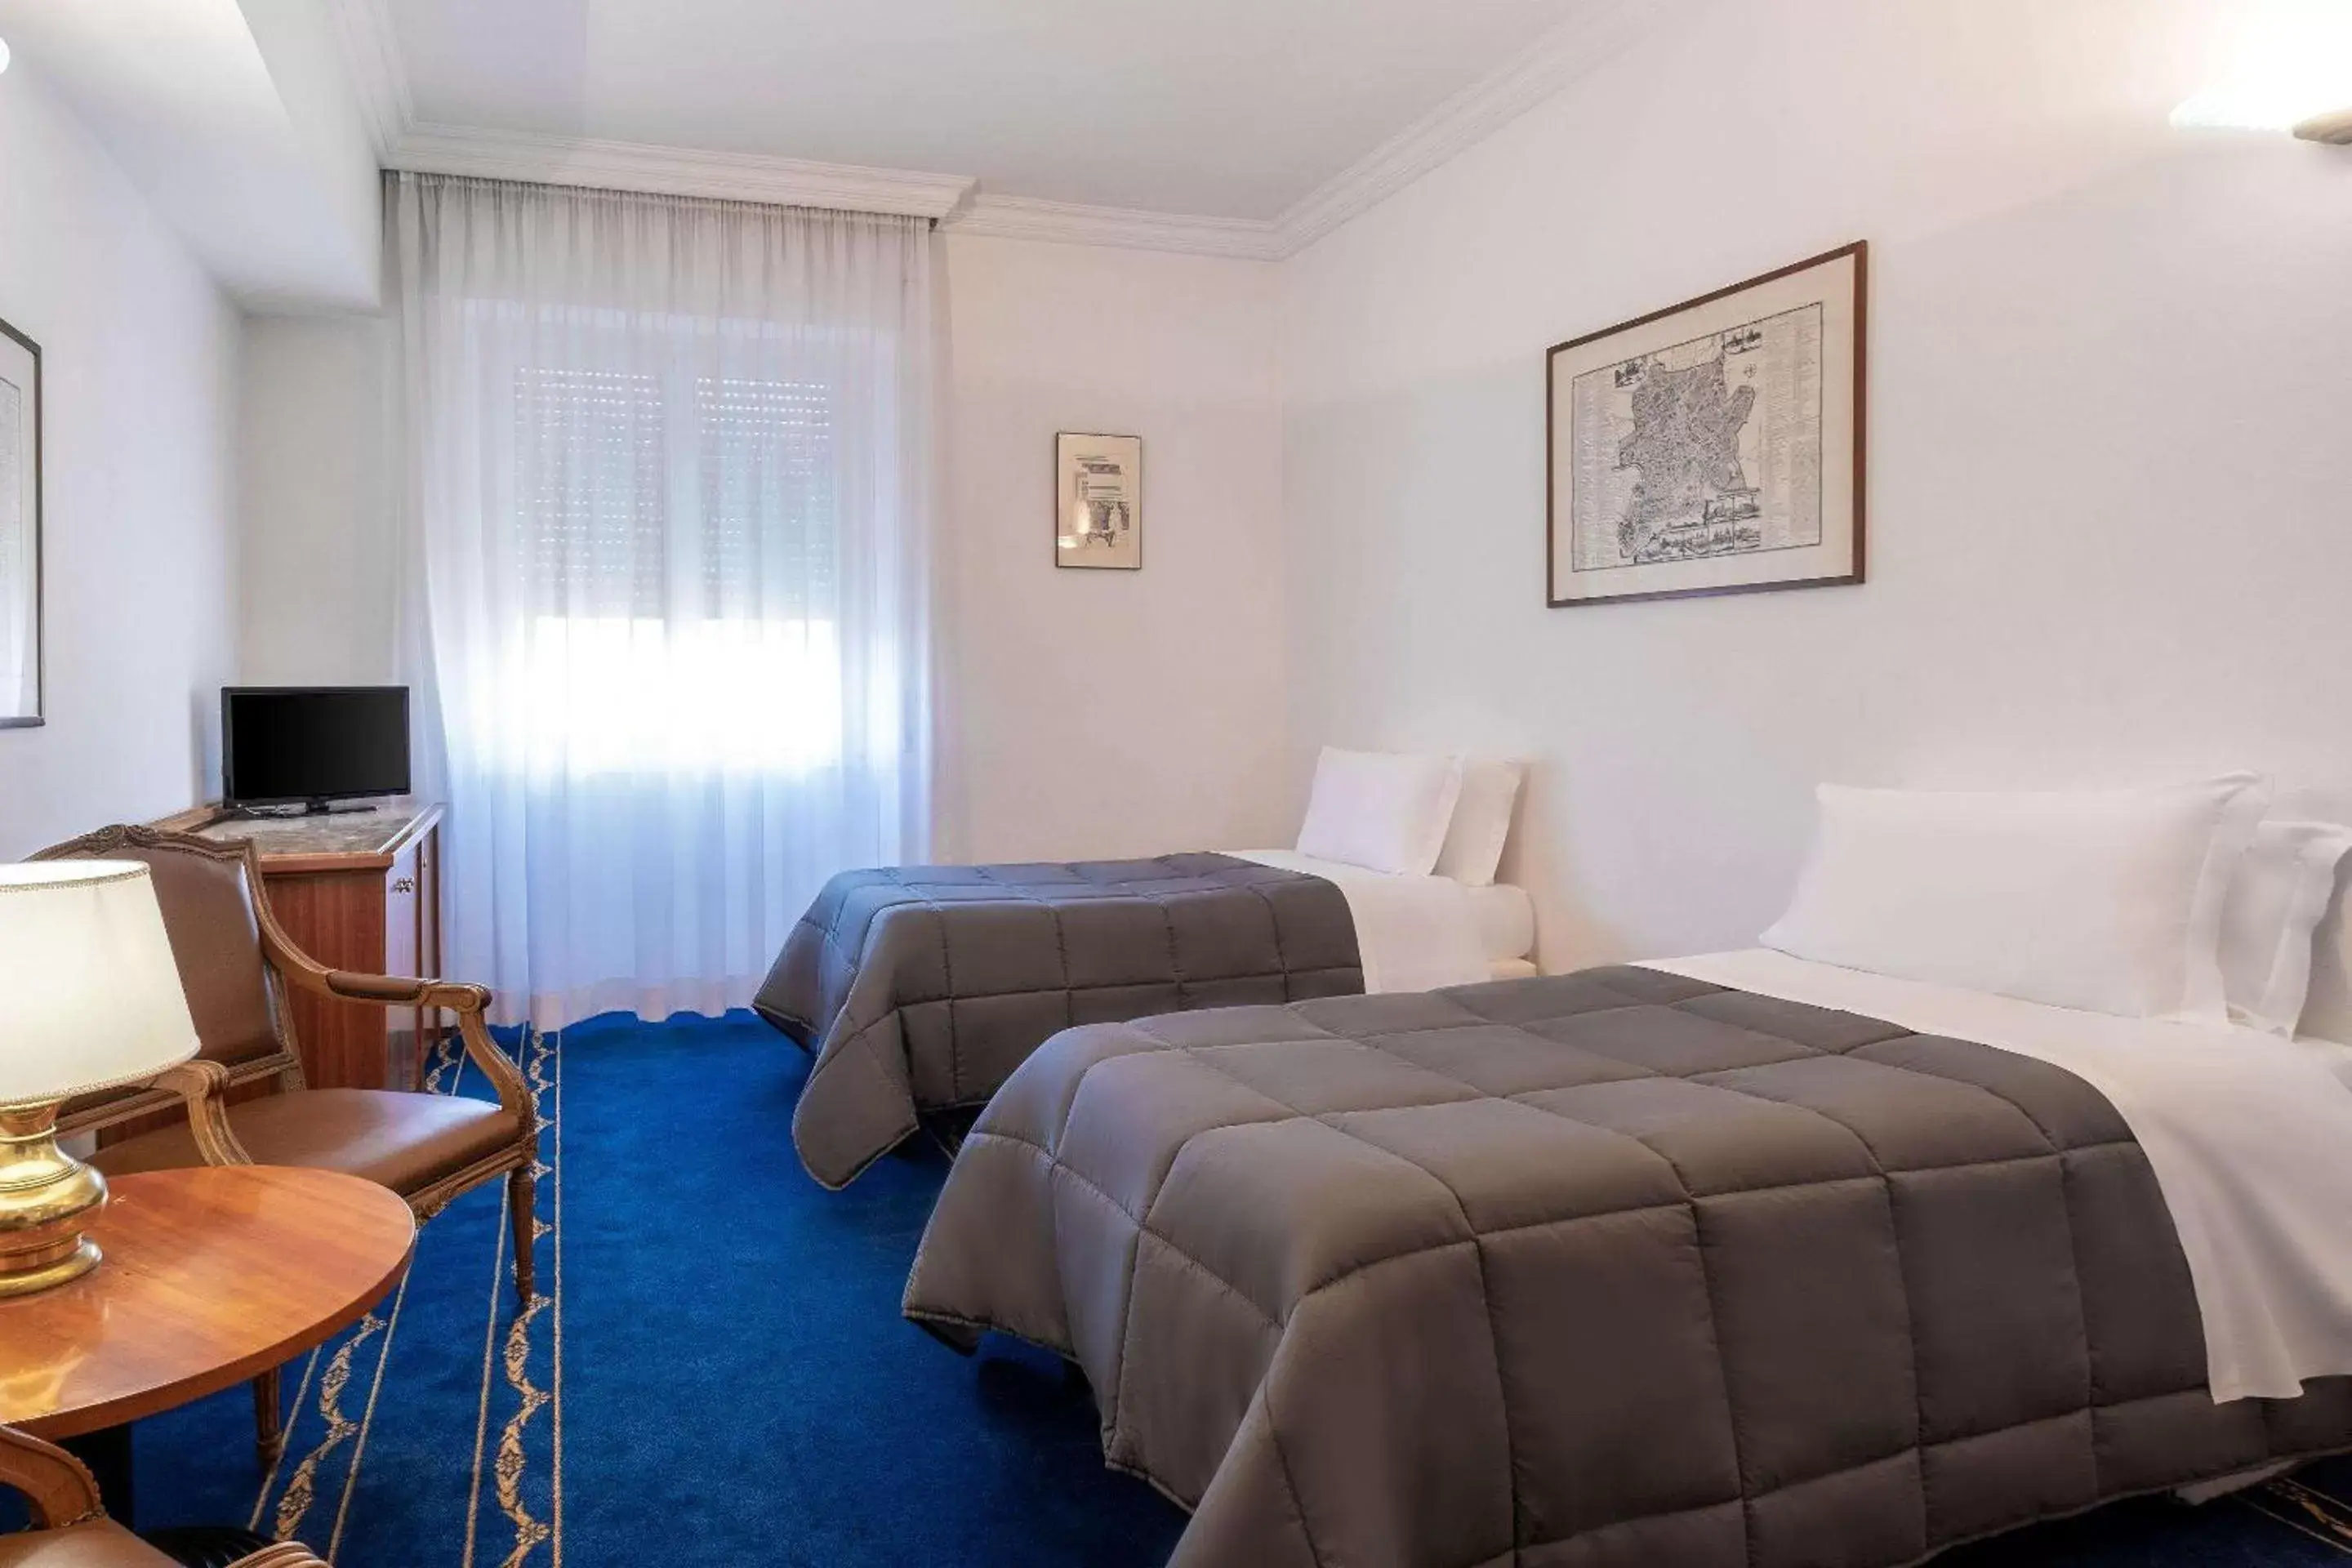 Bedroom, Bed in Quality Hotel Nova Domus